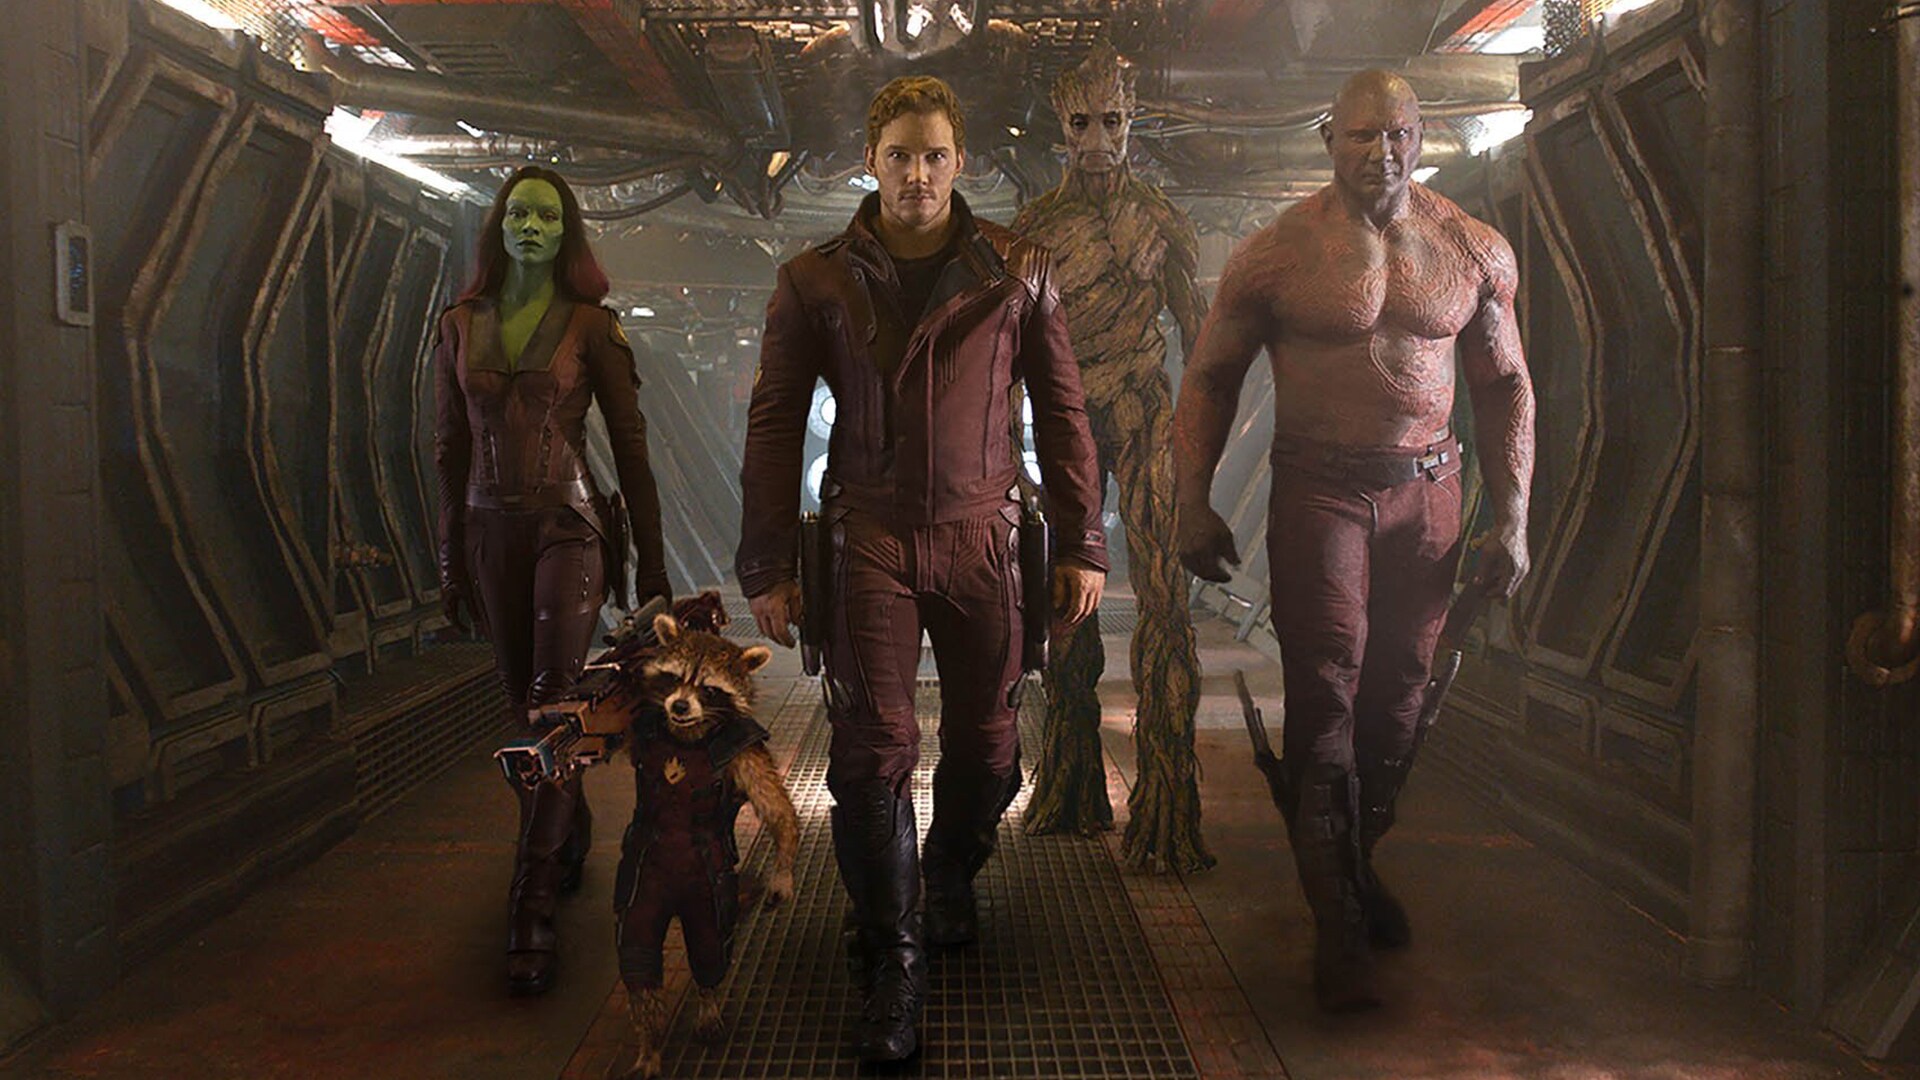  Repasa los momentos más épicos de Drax, Mantis, Yondu y otros personajes en 'Leyendas de Marvel Studios'